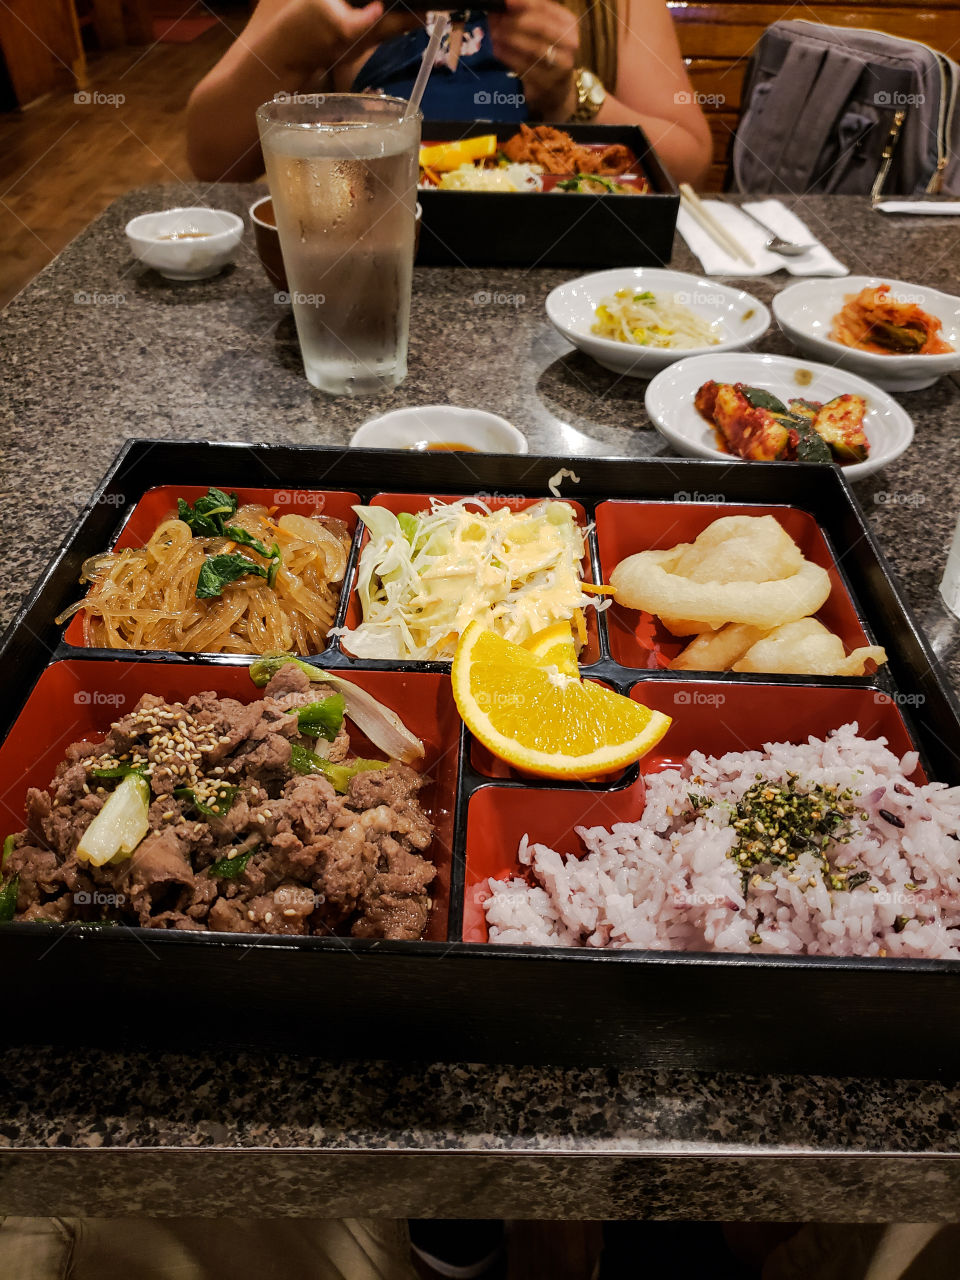 enjoy some nice Korean food!